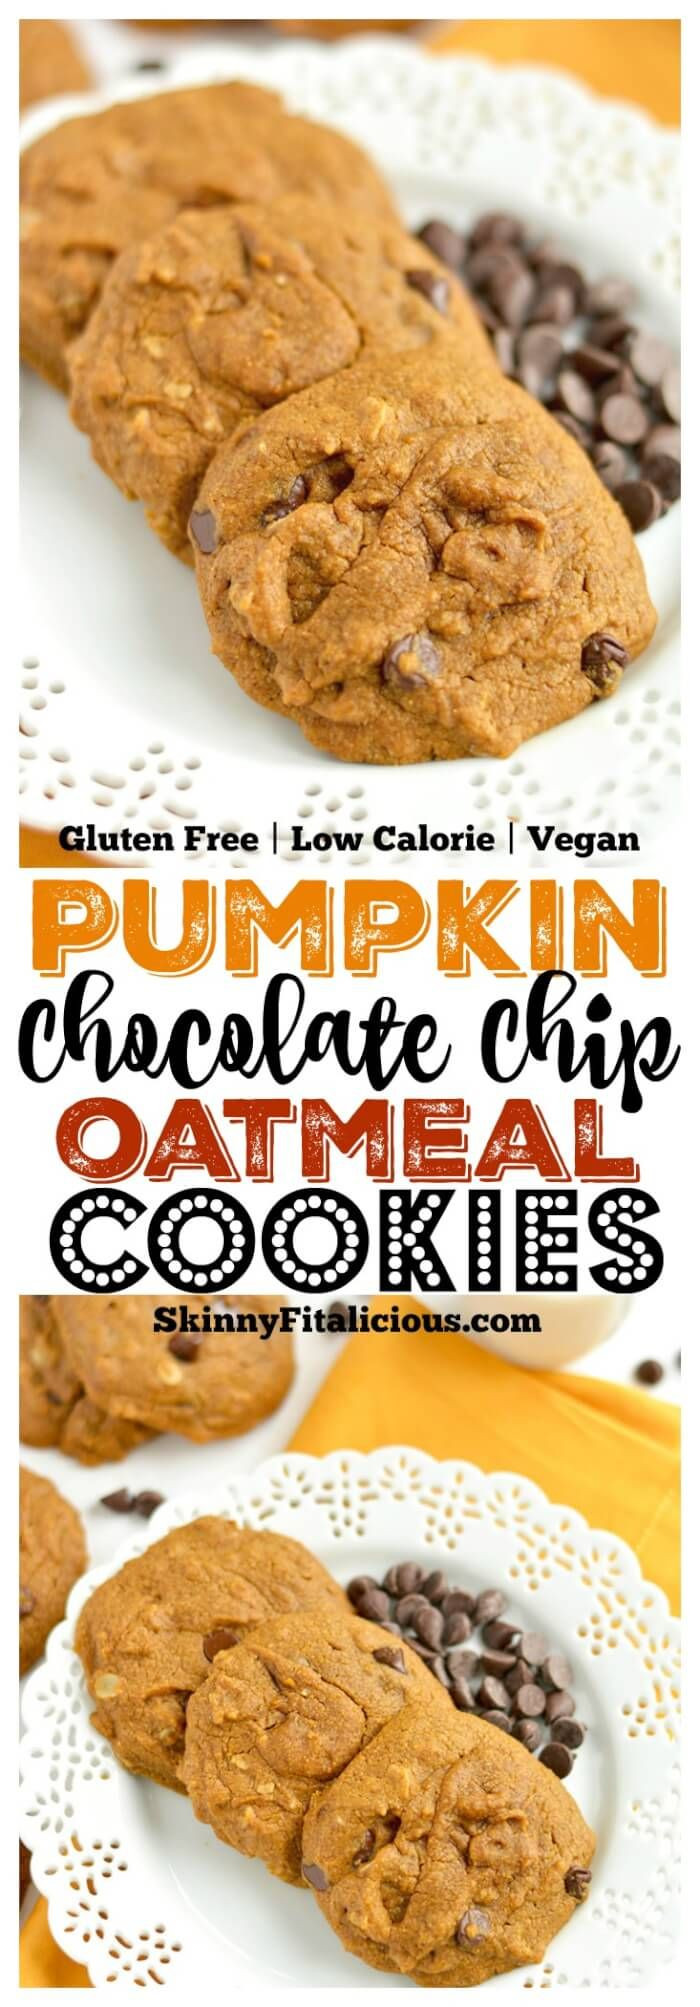 Low Calorie Pumpkin Cookies
 Best 25 Low calorie vegan ideas on Pinterest